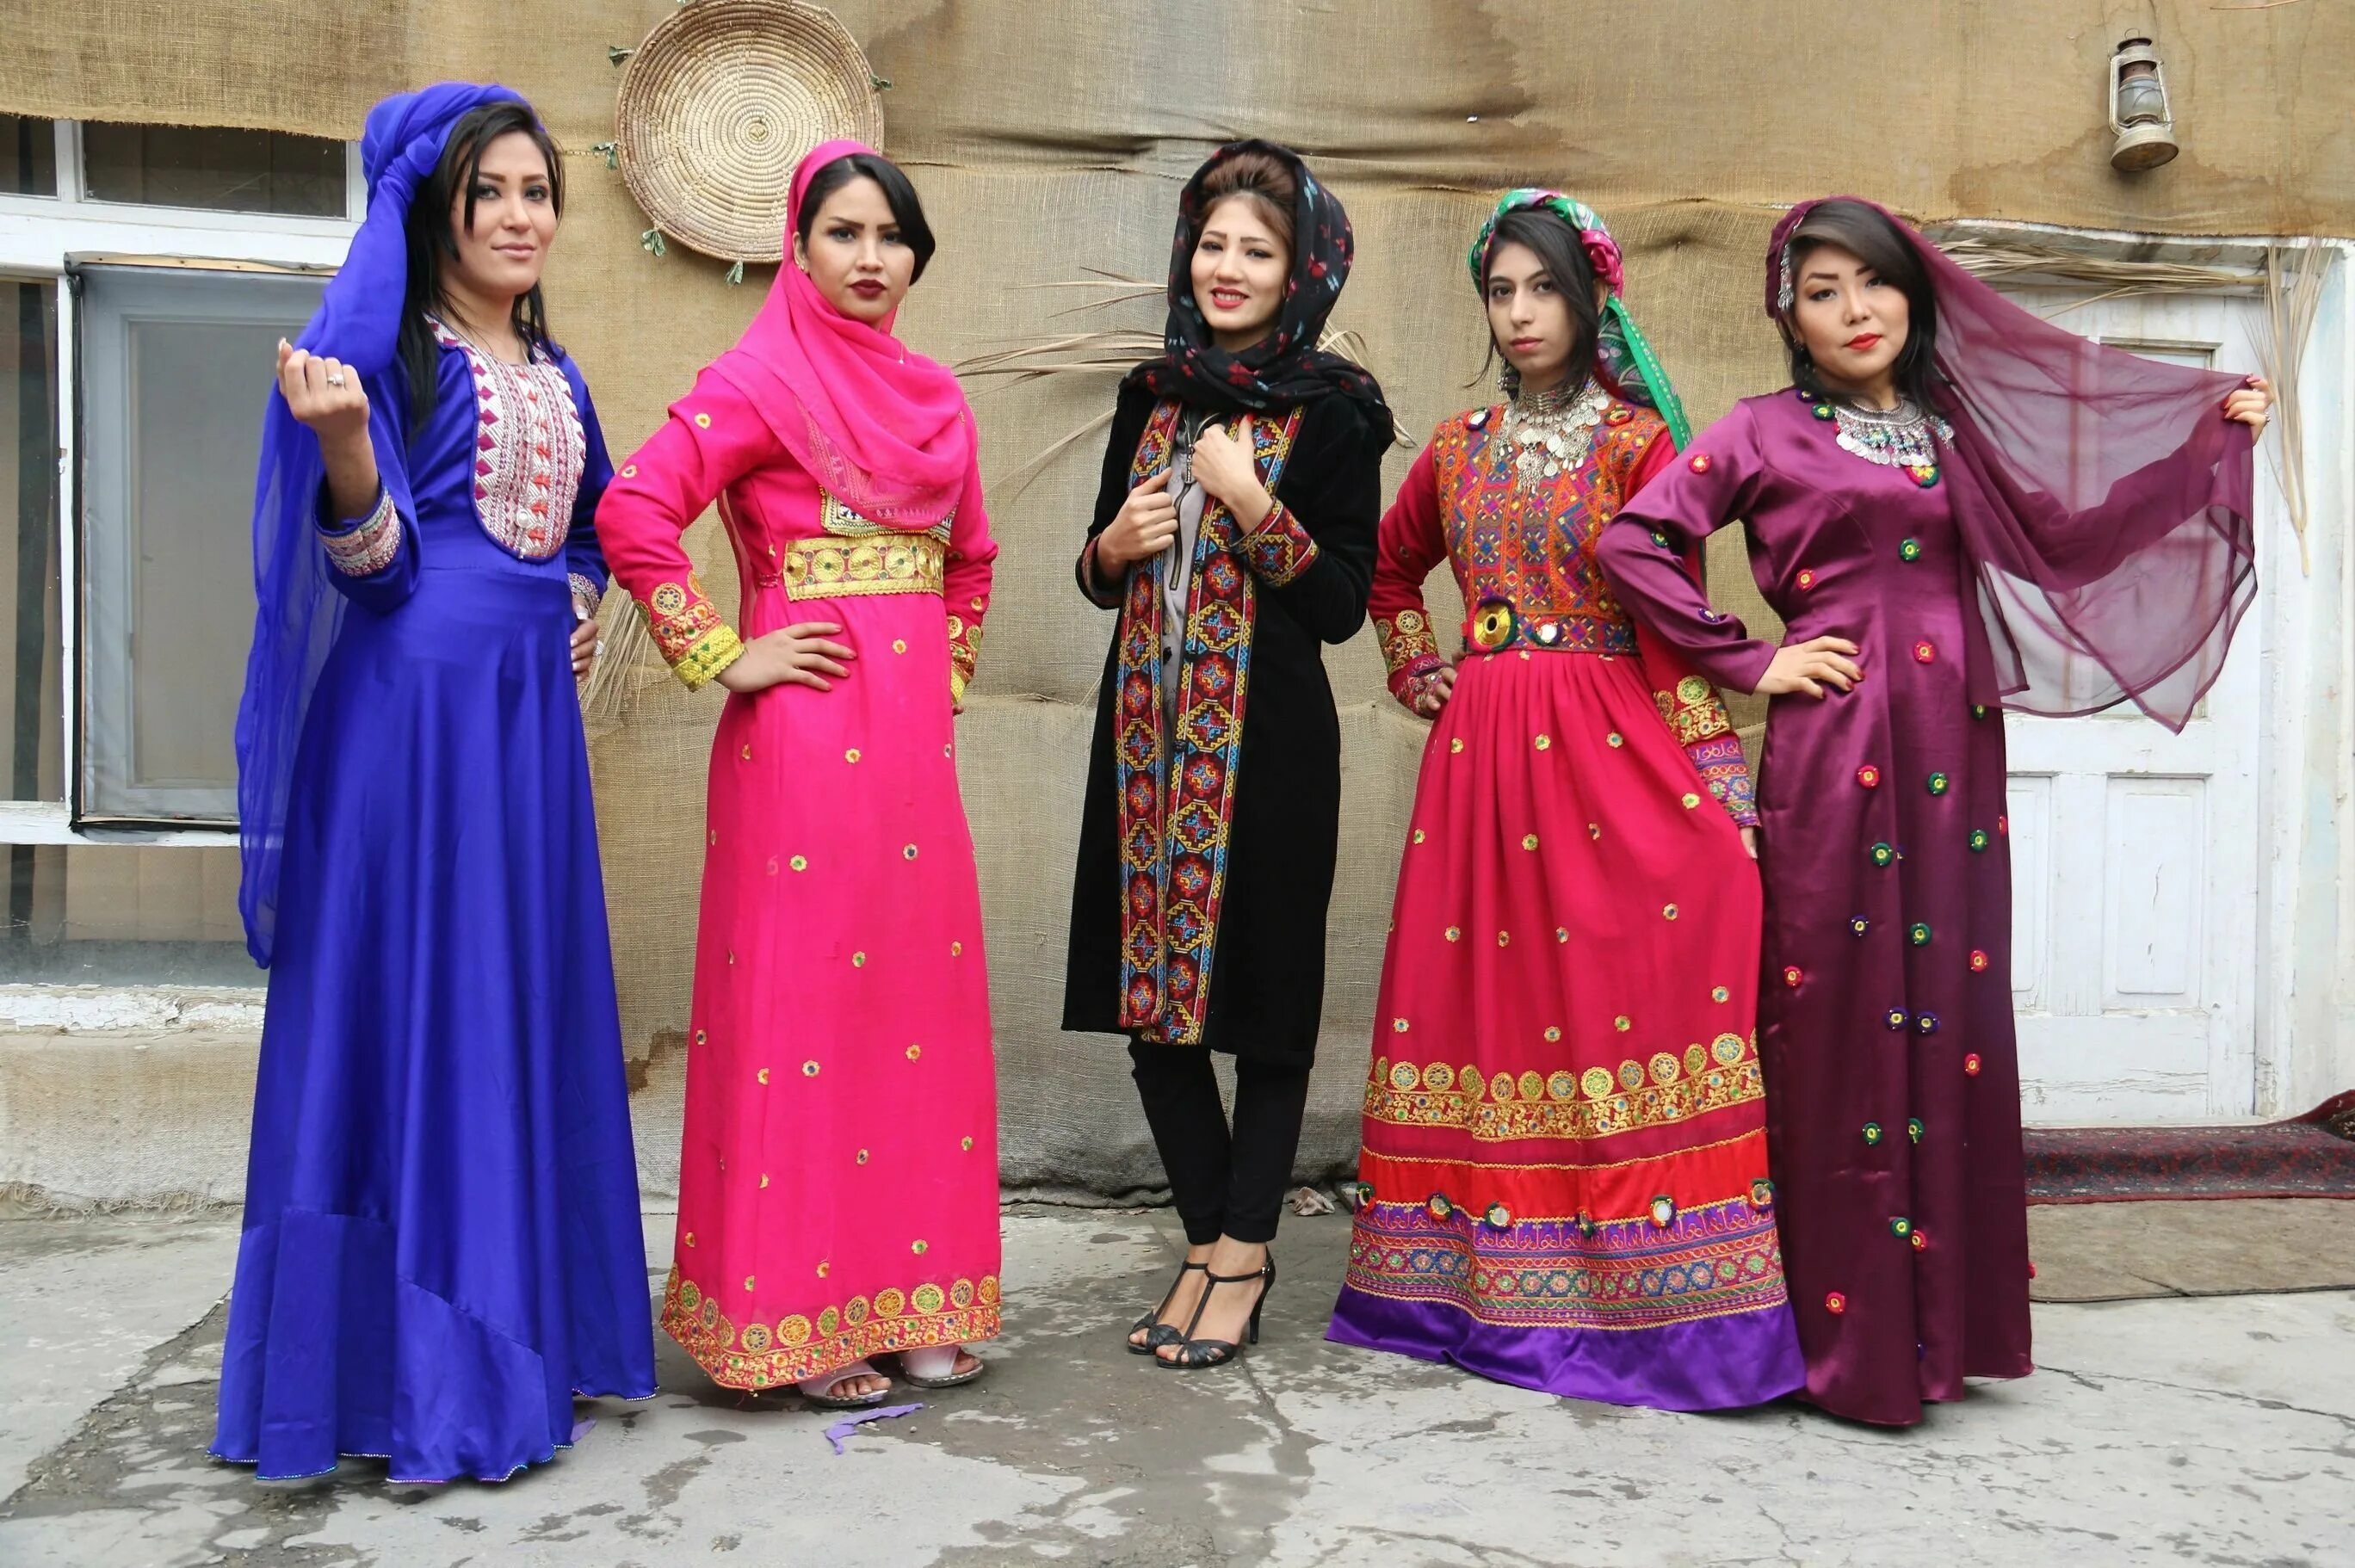 Афганская одежда. Афганистанский национальный костюм. Иранский нац костюм. Афганская одежда для женщин. Иранская одежда для женщин.